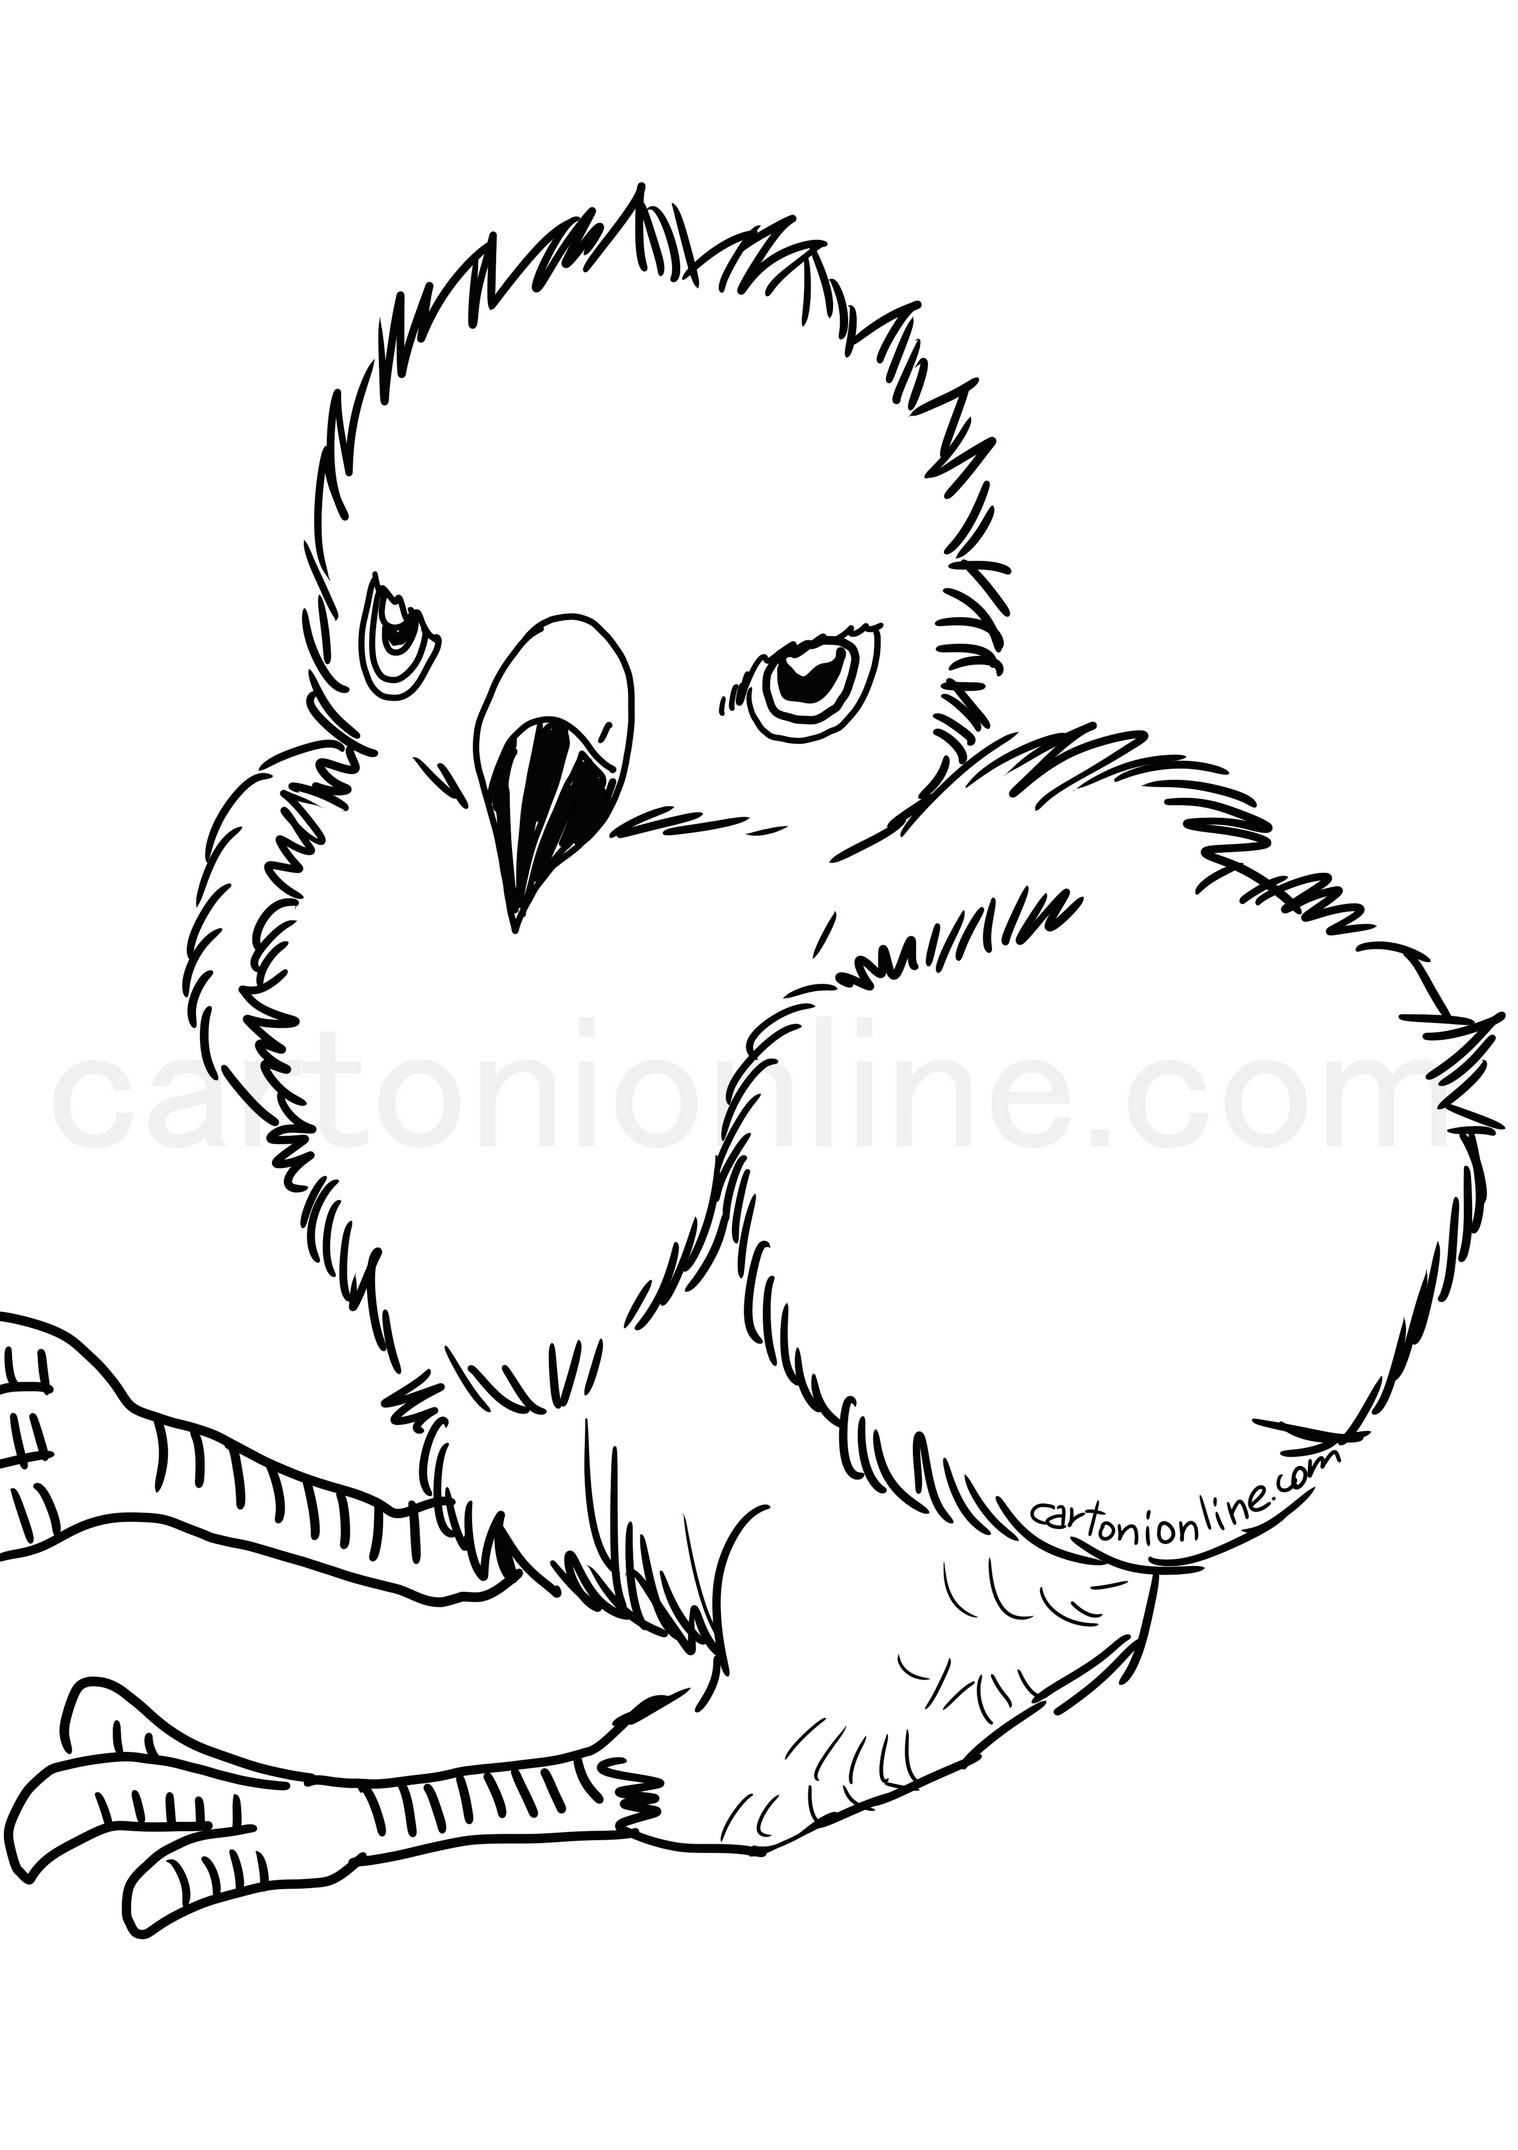 Hawk chick kleurplaat